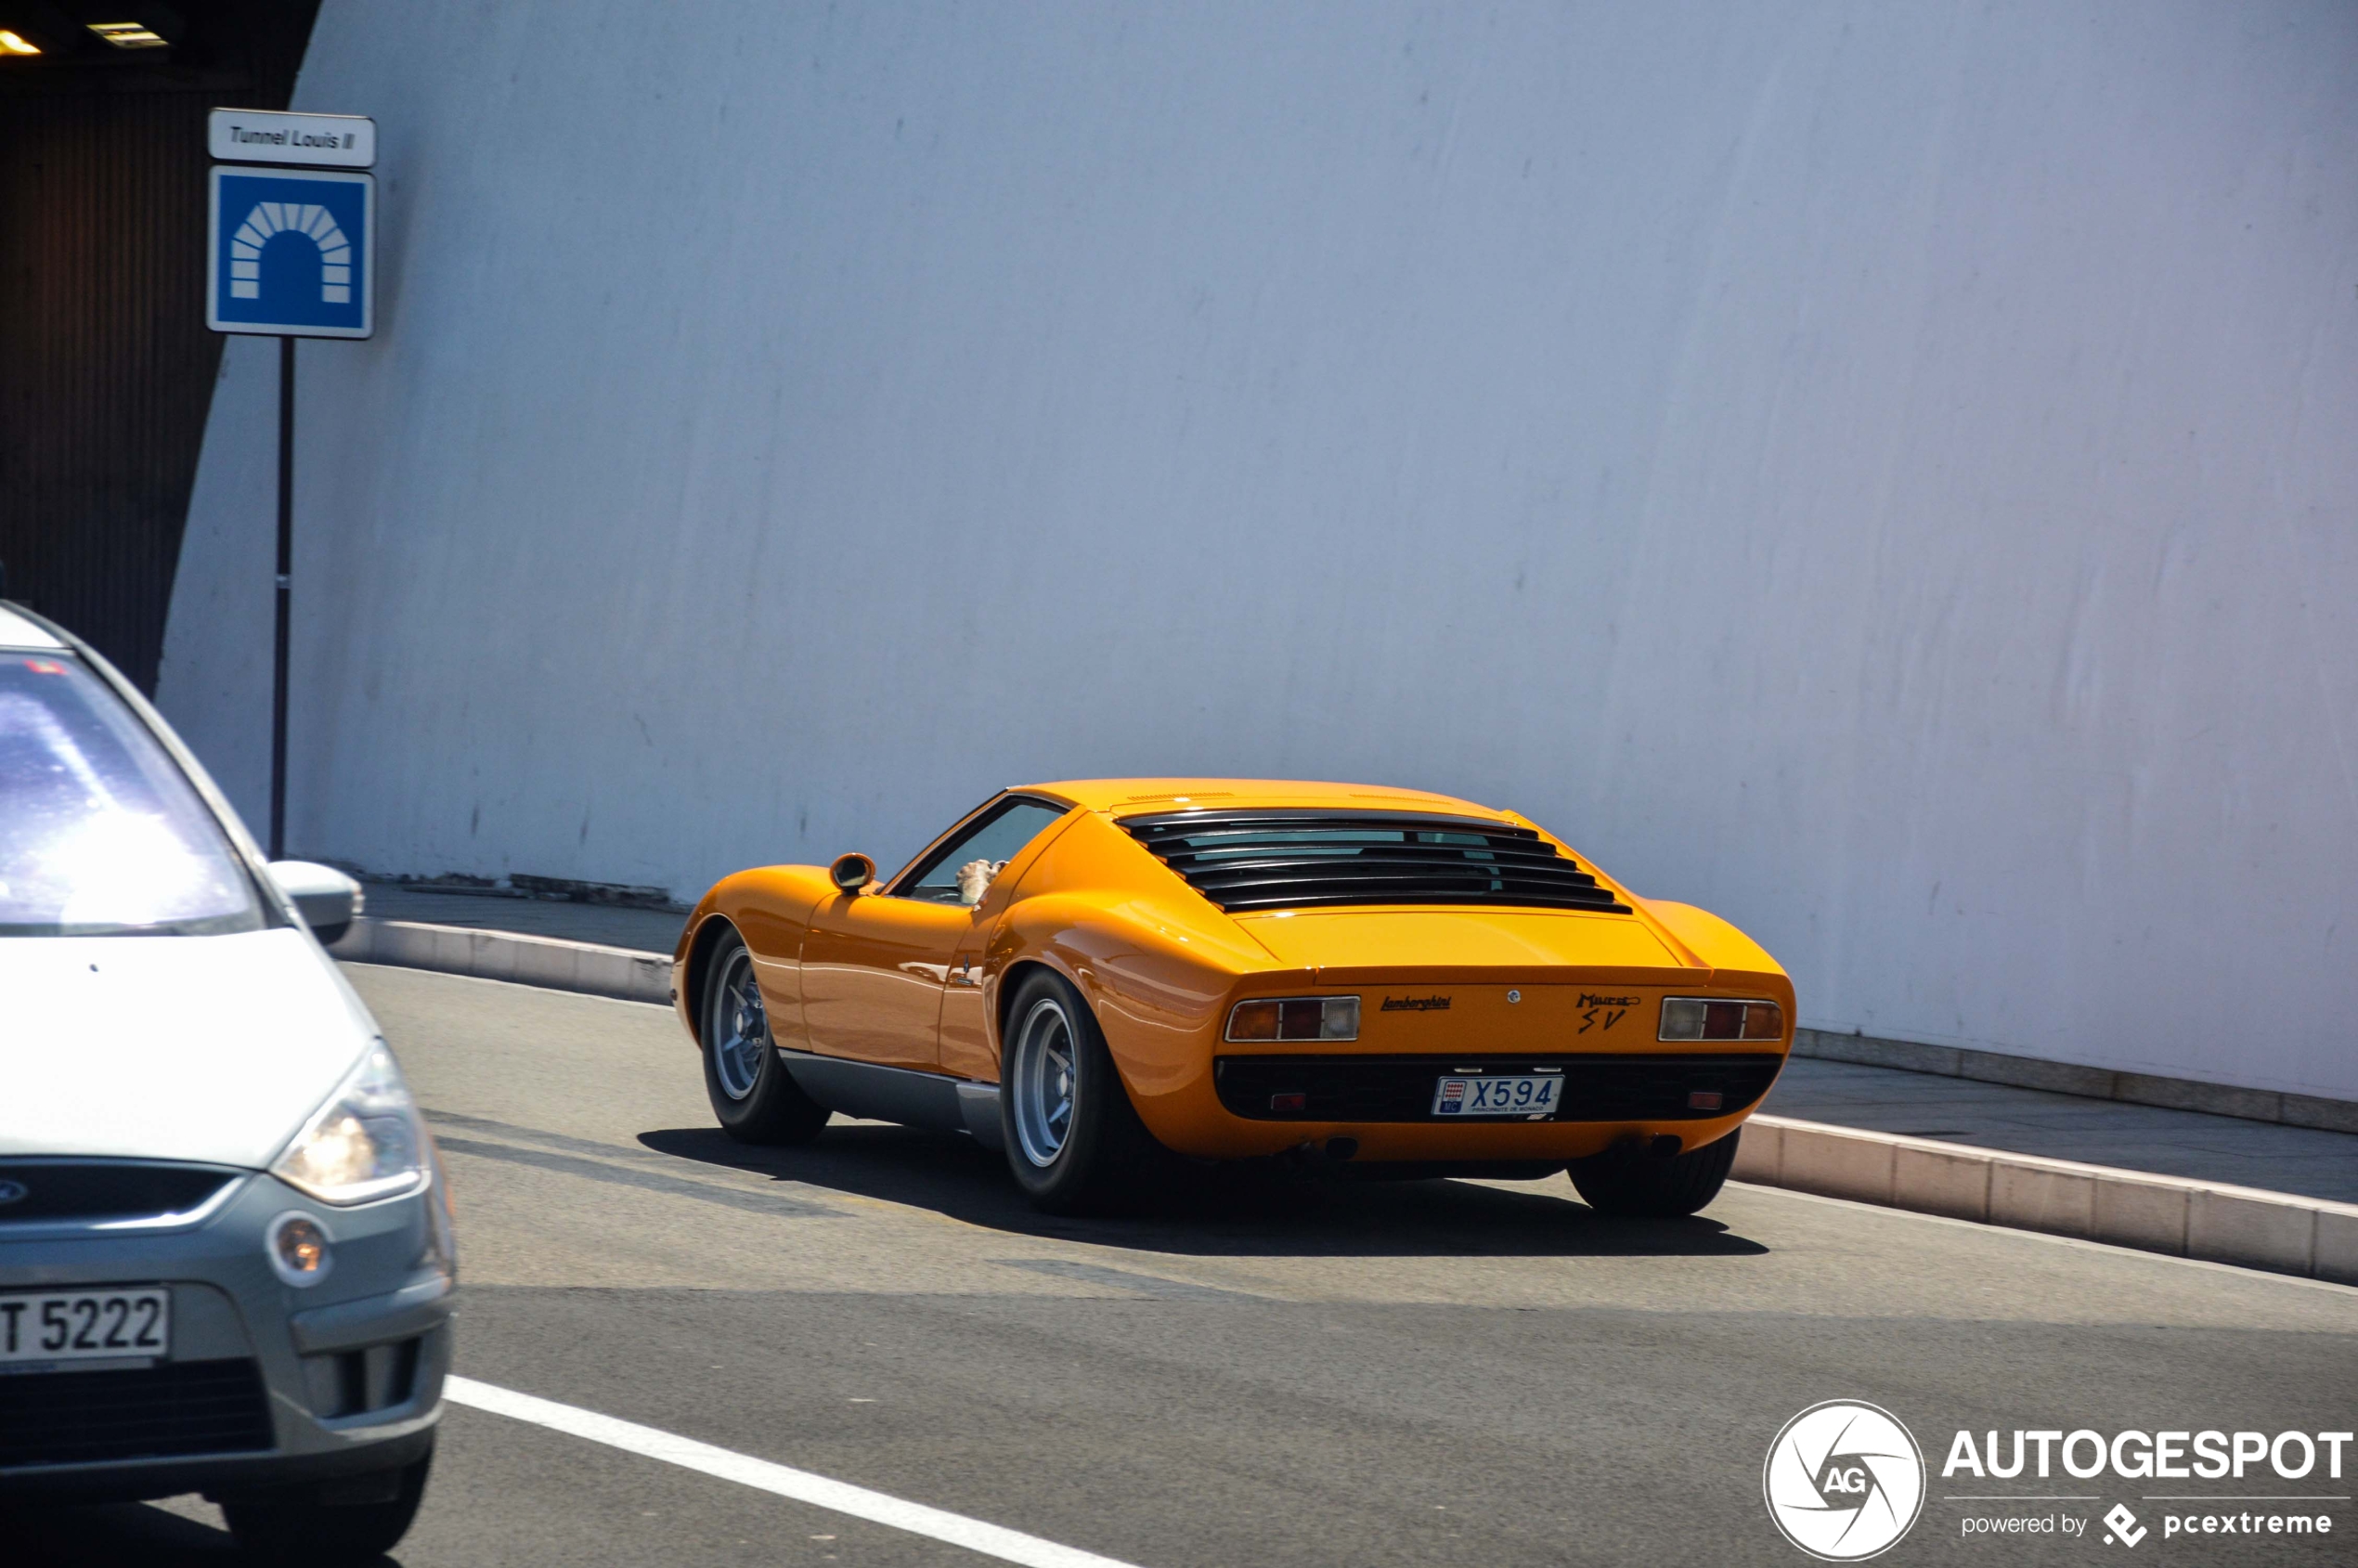 Deze Lamborghini is al jaren inwoner van Monaco